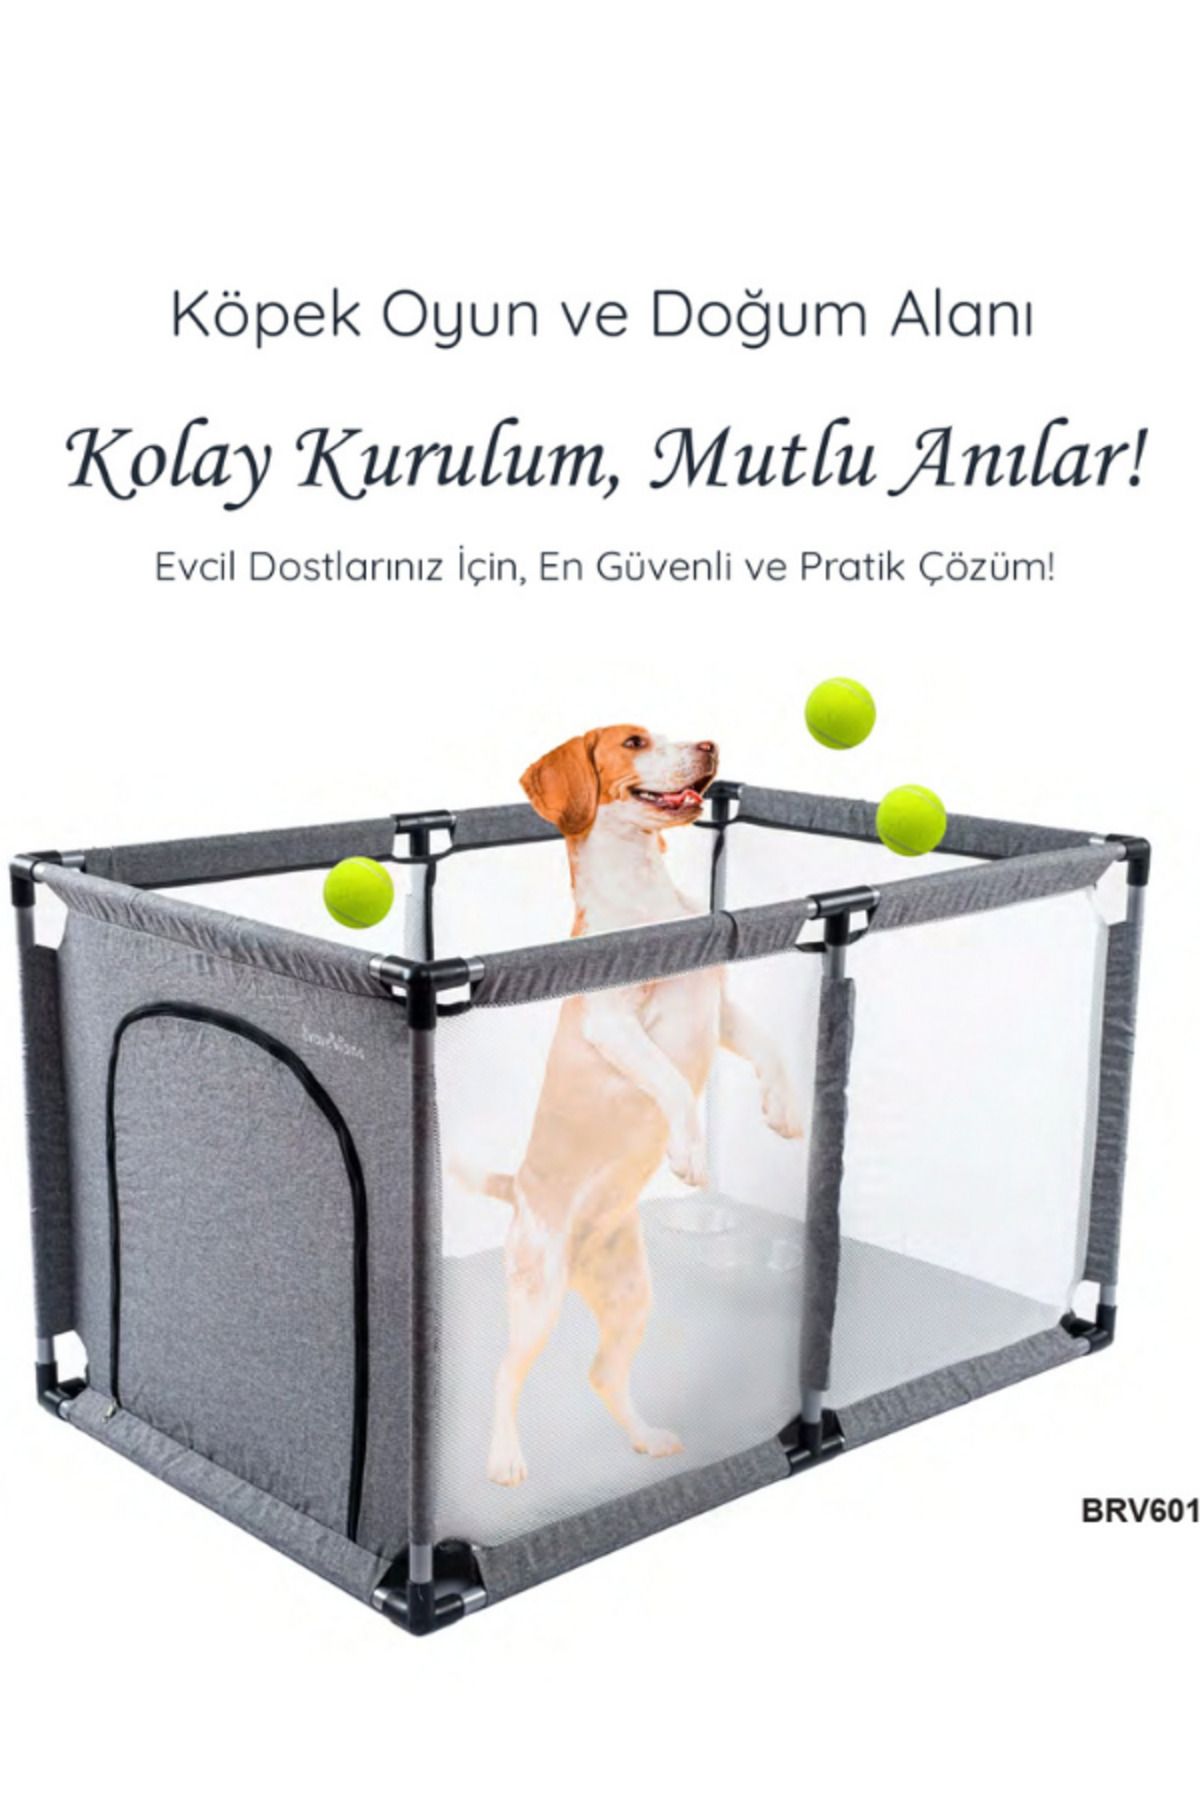 EGGBABY Köpek Evi Doğum Çadırı Köpek Oyun Alanı Kedi Evi Köpek Çiti Kedi Doğum Alanı